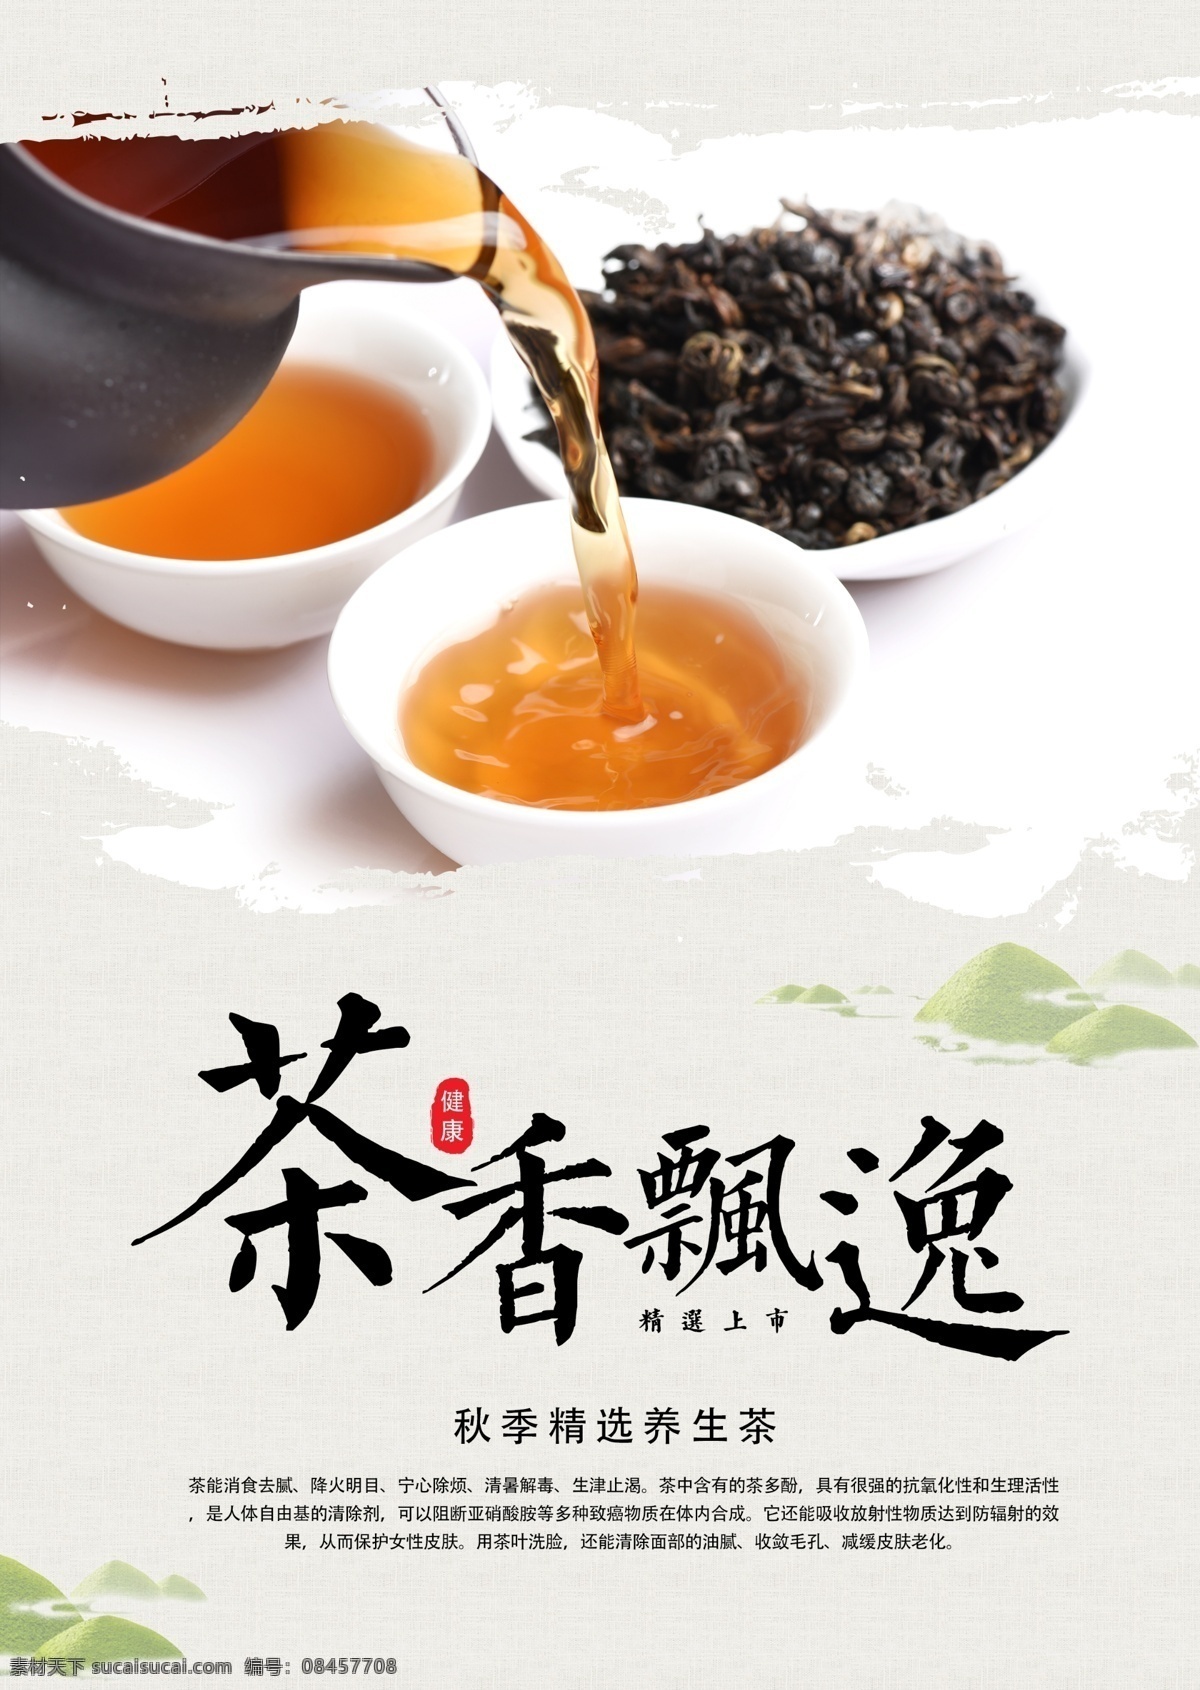 茶叶 茶具 活动 宣传海报 素材图片 宣传 海报